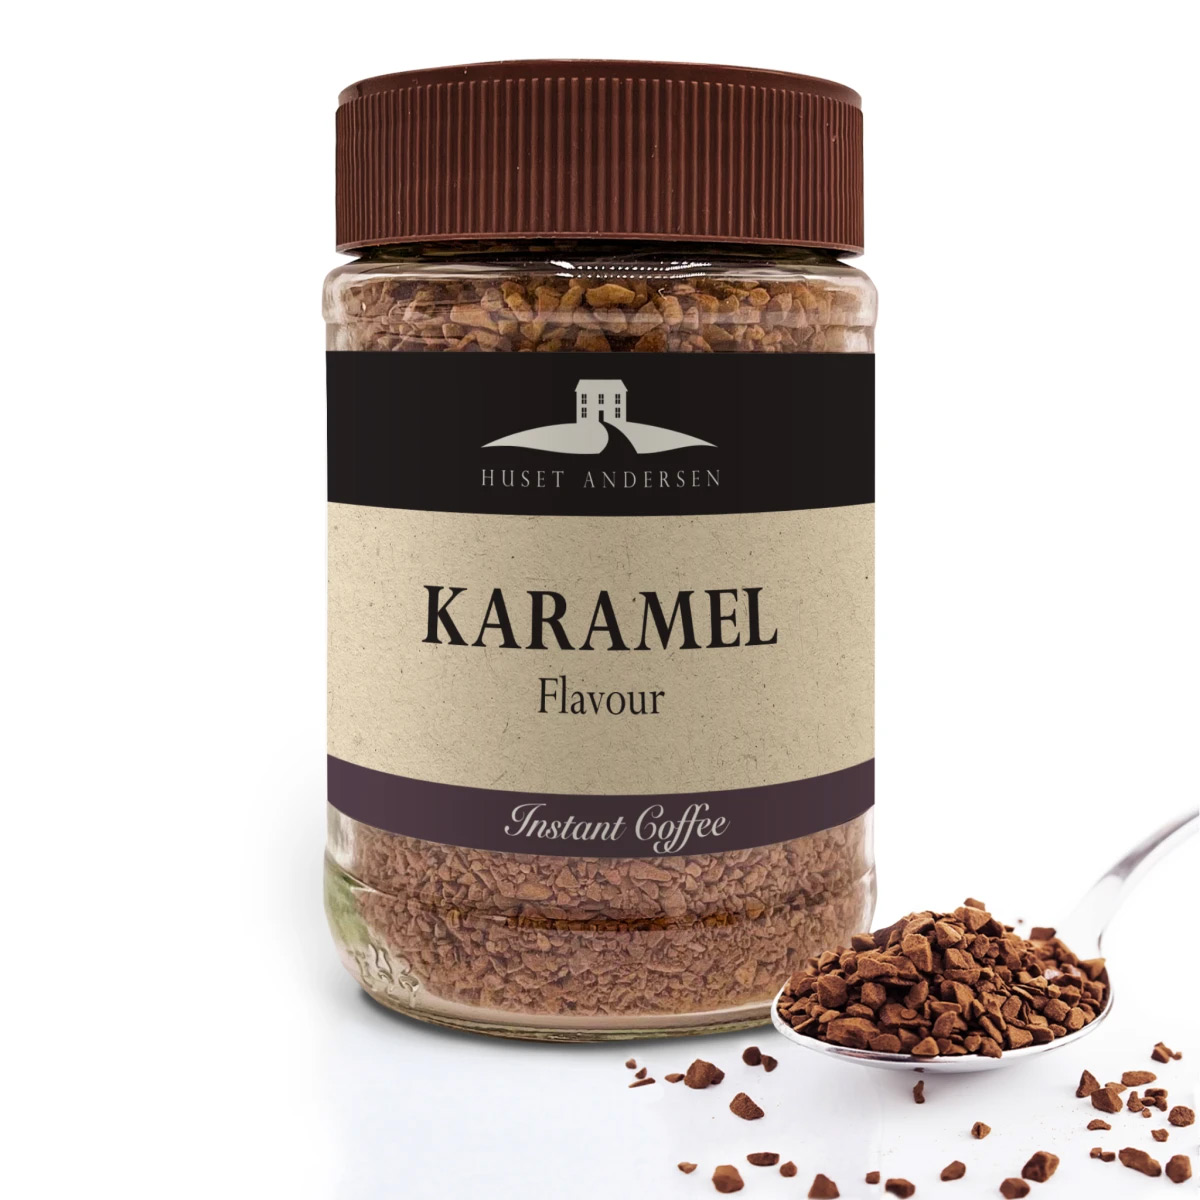 Billede af Karamel Flavour Instant Coffee